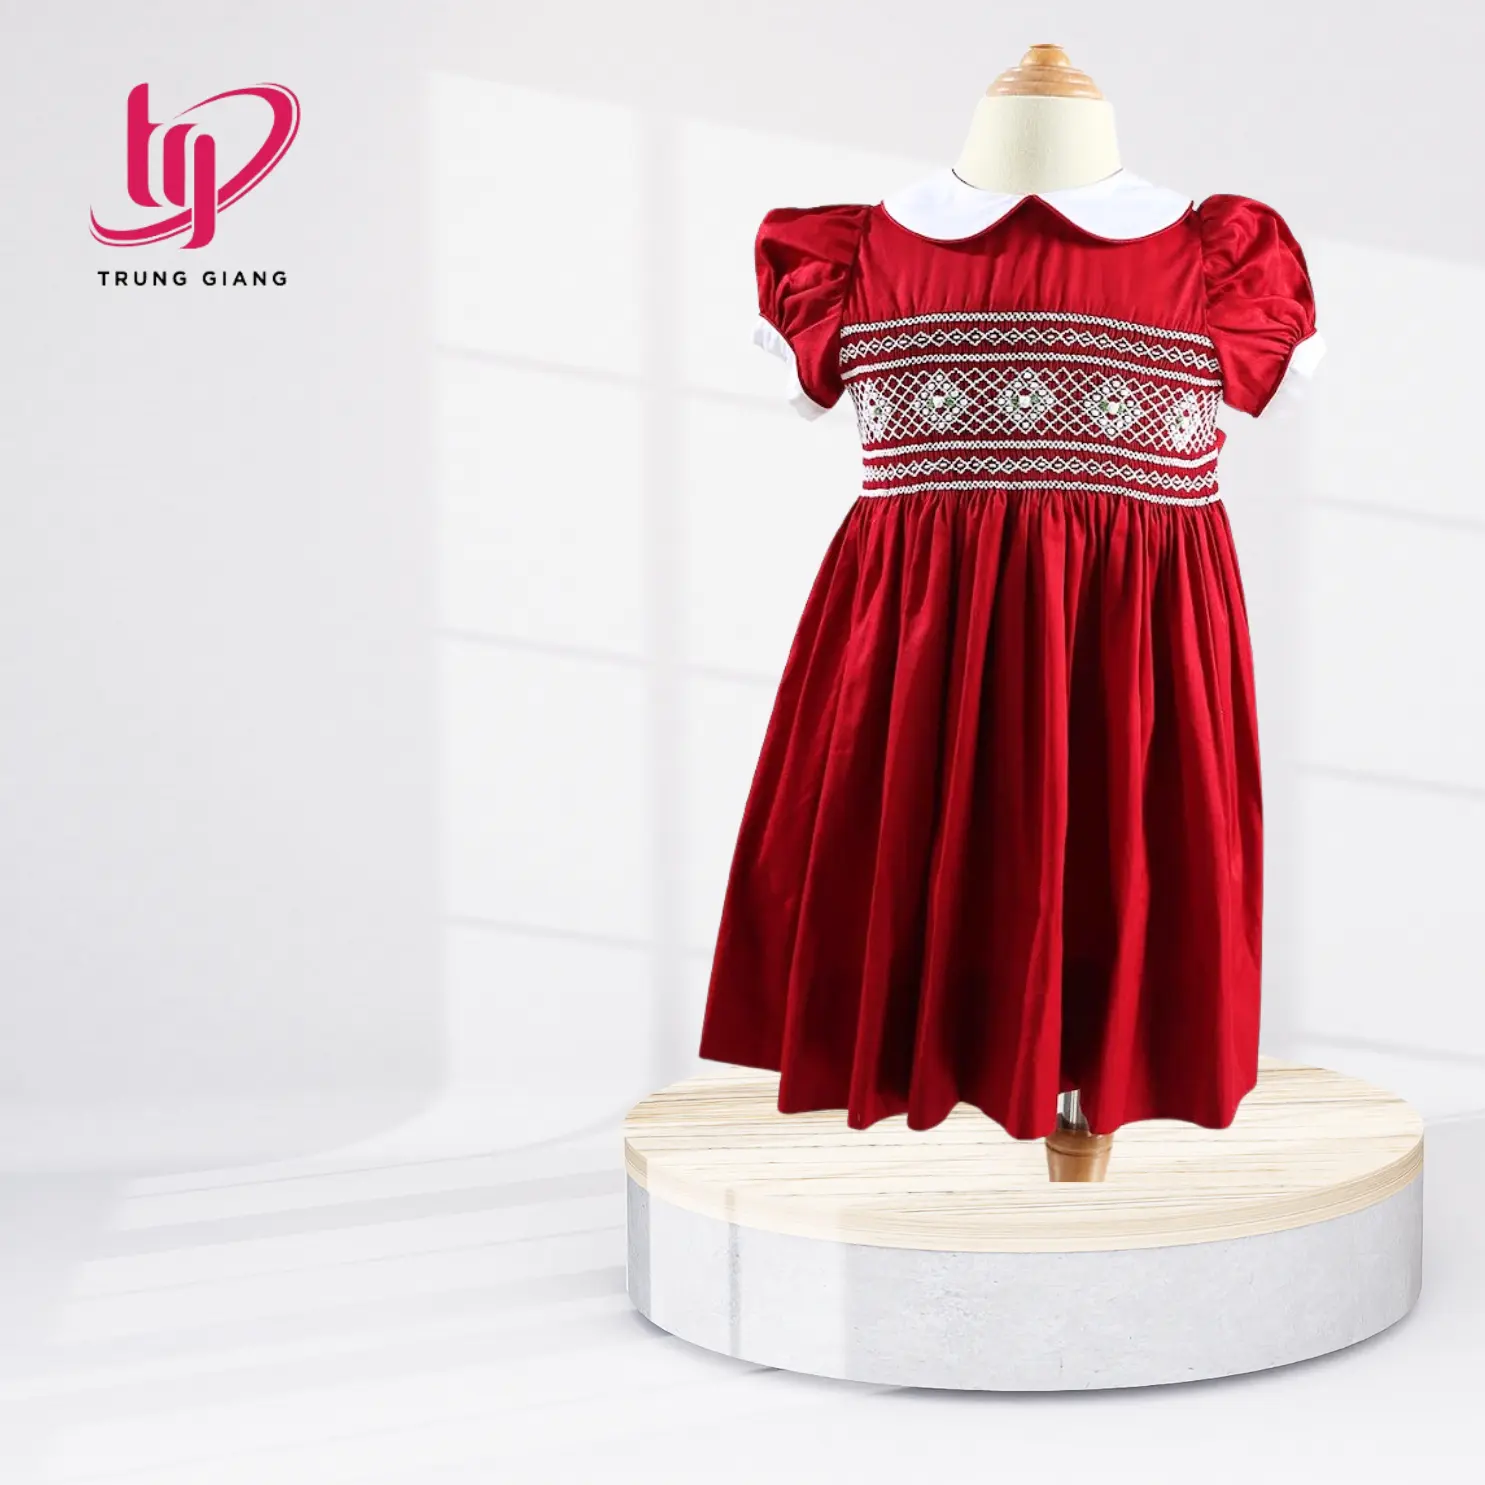 Ropa de bebé Vestidos de bebé Vestido de niña Smocked para niña Algodón Rojo Corto Diseño personalizado del fabricante de Vietnam